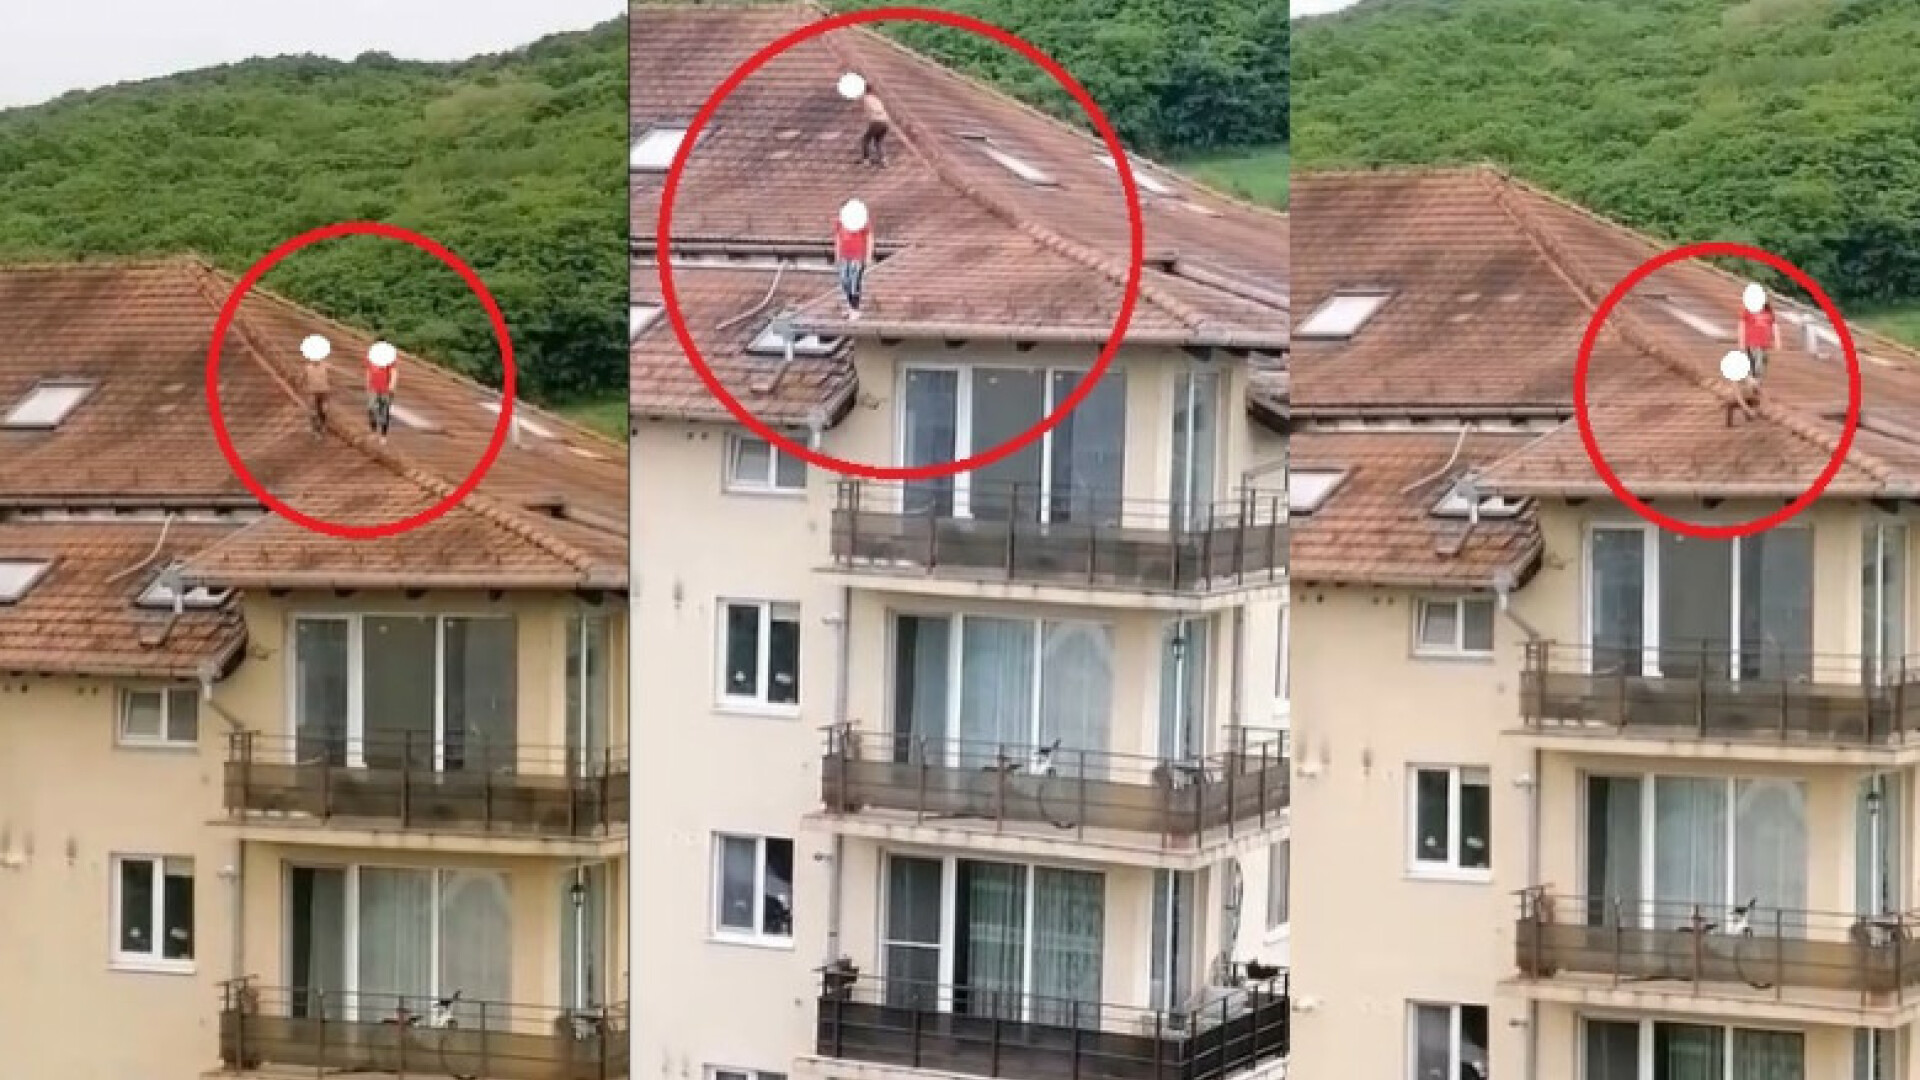 copii pe acoperiș